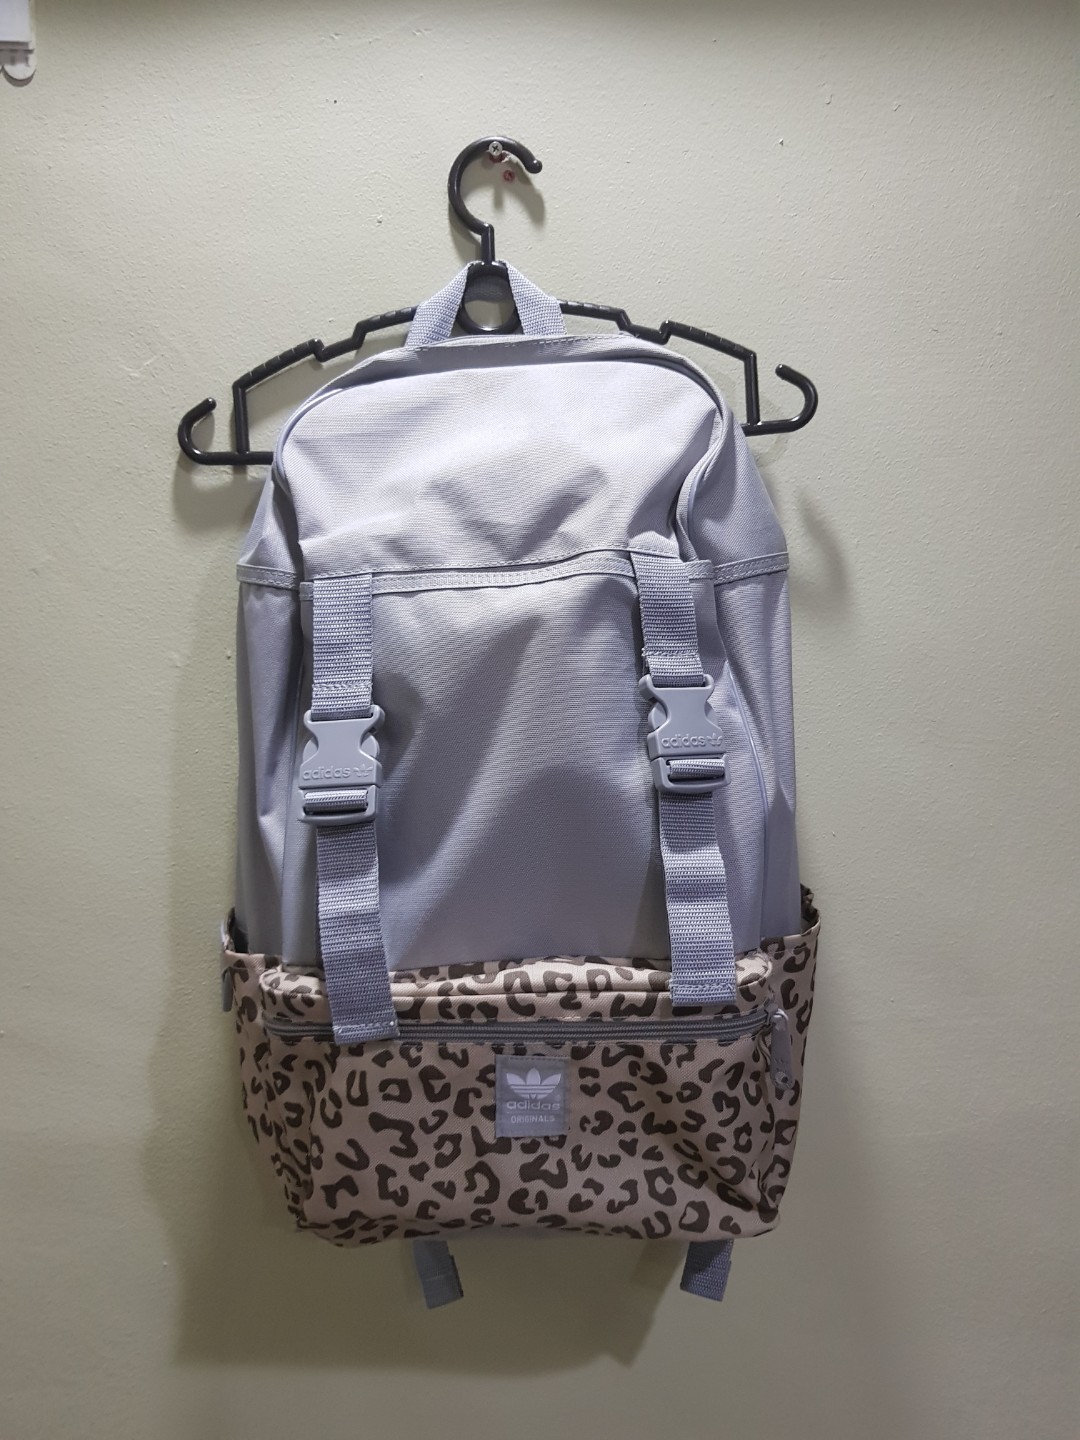 adidas animal print backpack